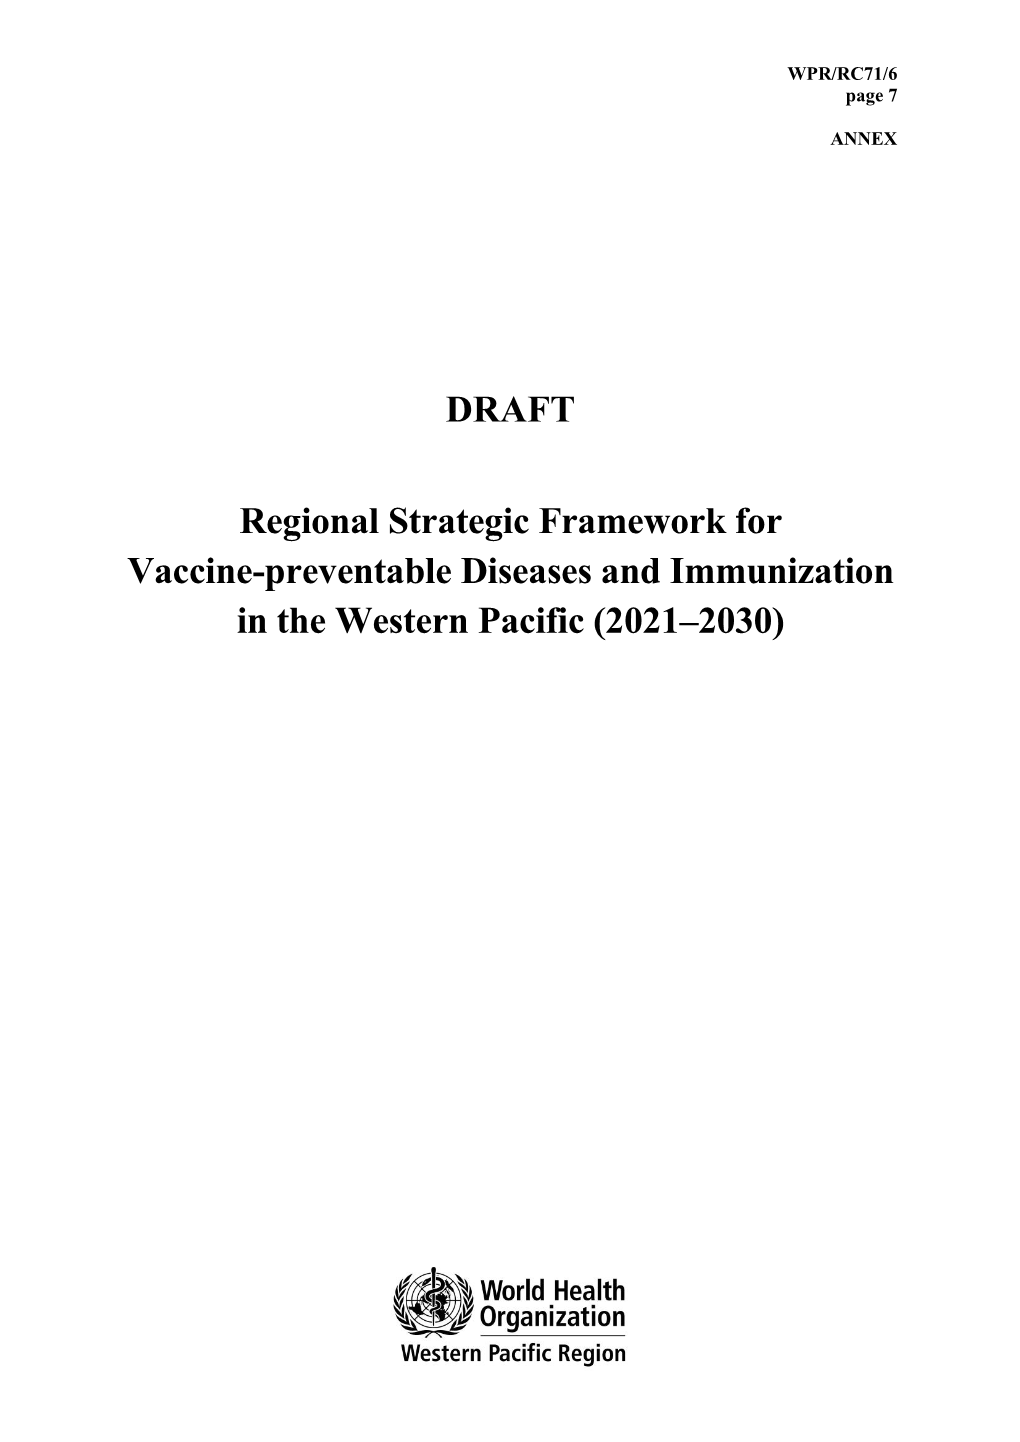 DRAFT Regional Strategic Framework for Vaccine-Preventable Diseases